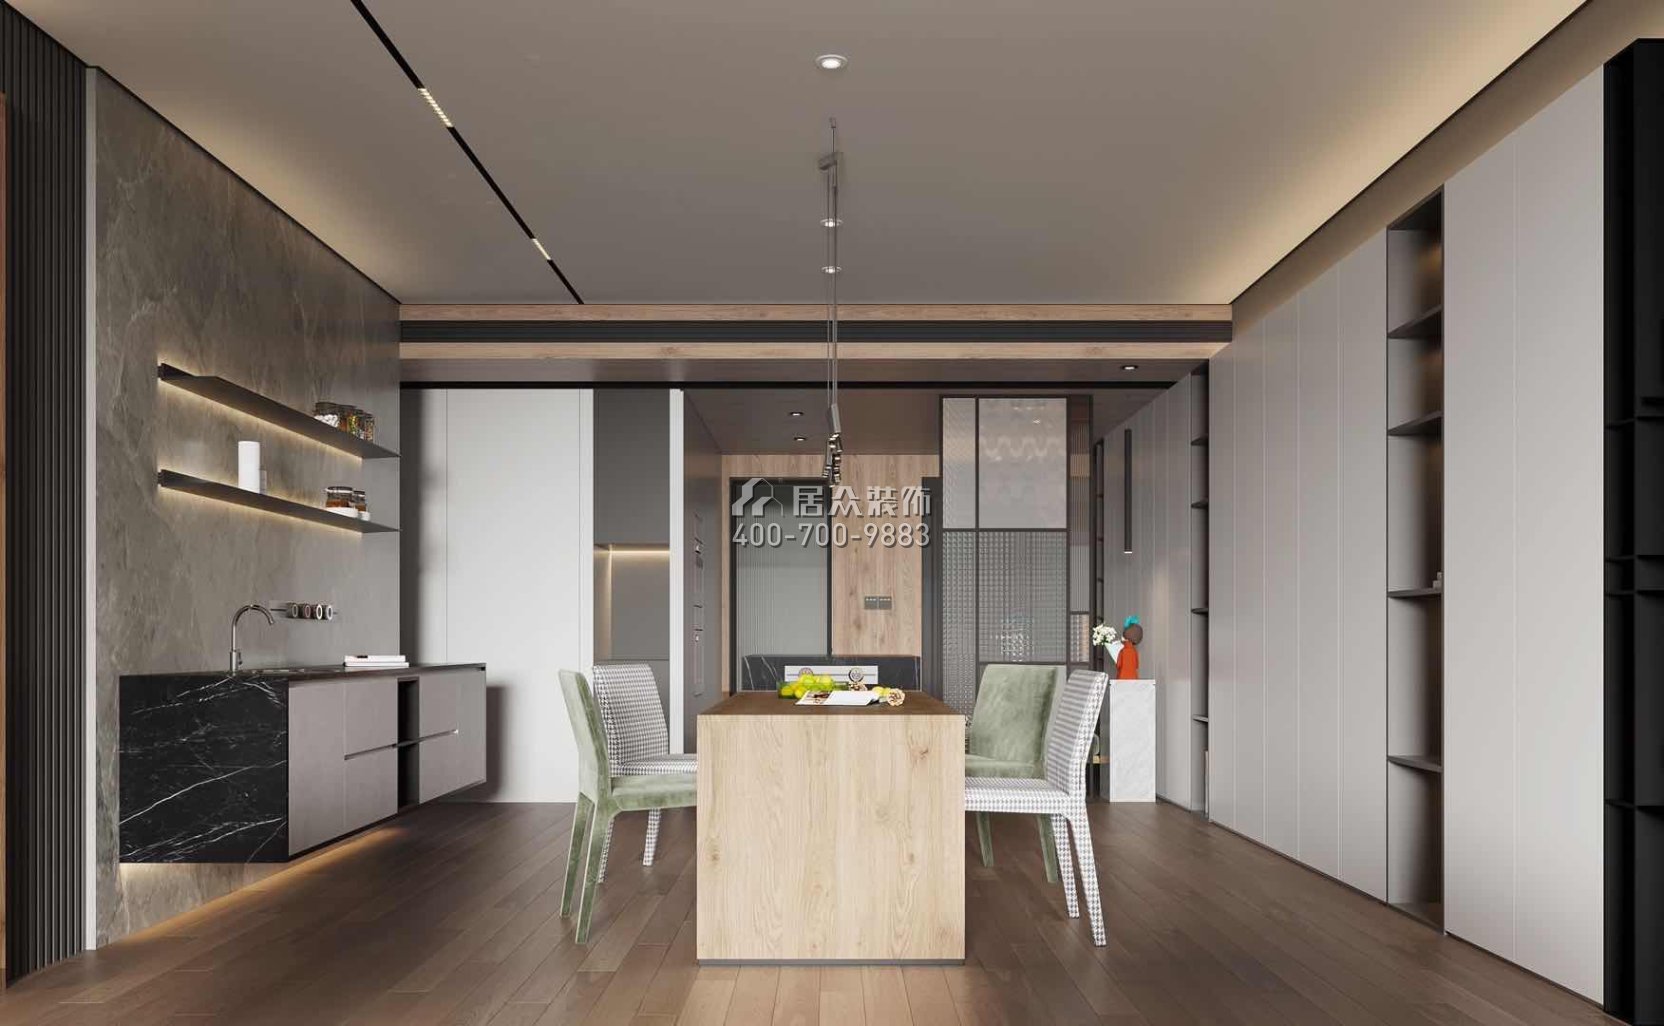 中建江山壹号197平方米现代简约风格平层户型餐厅装修效果图